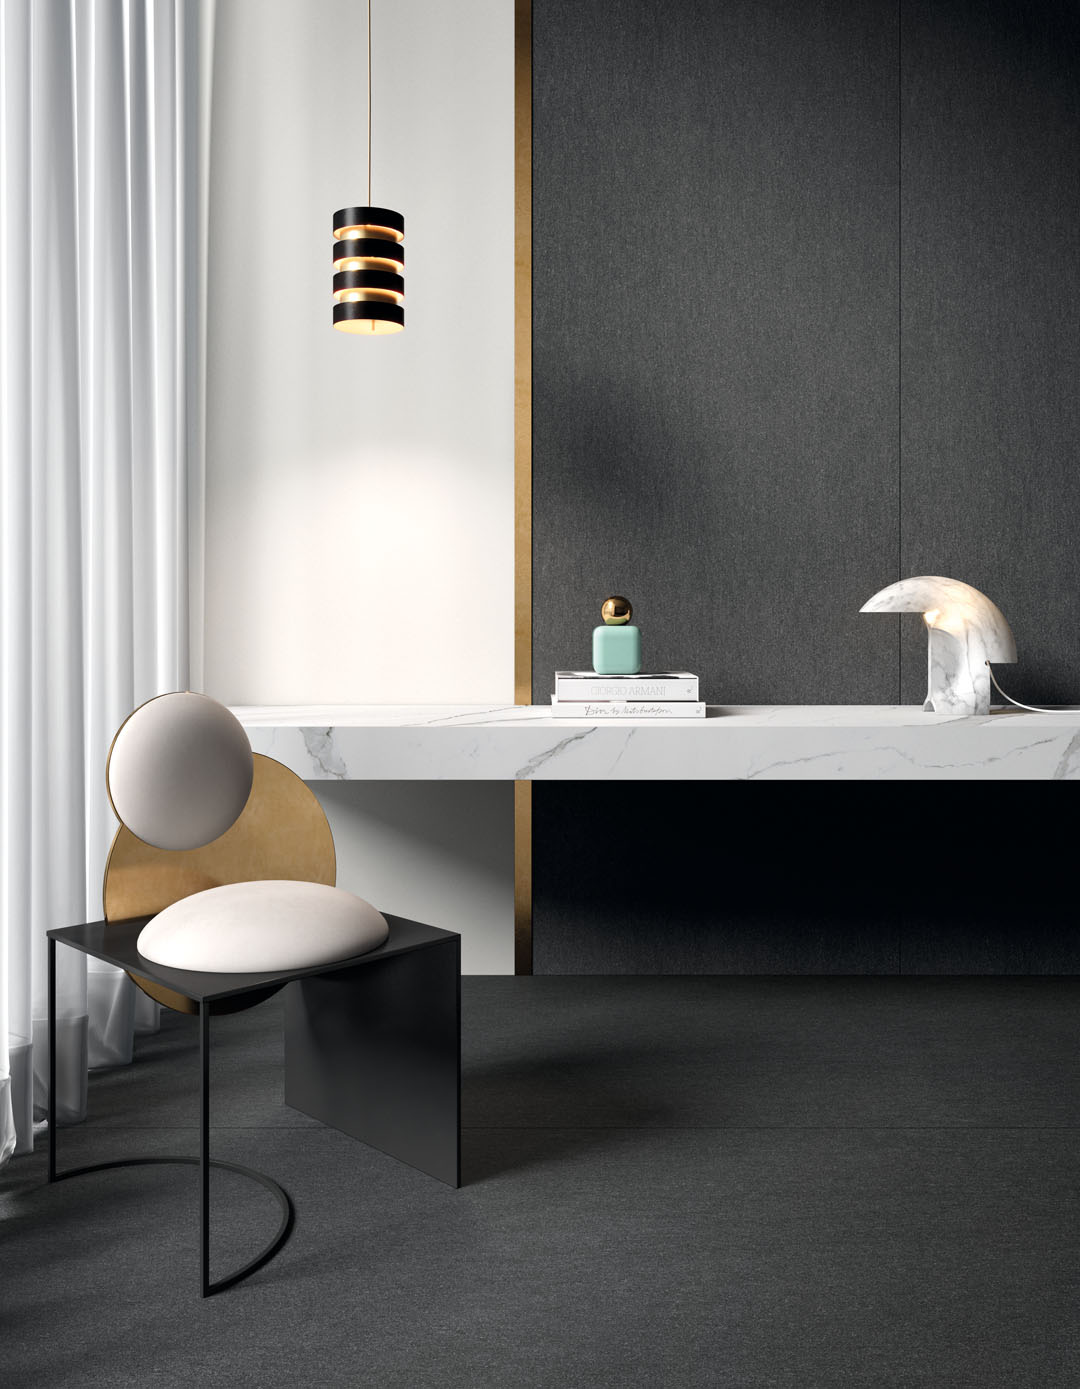 Studio con sedia di design e scrivania su misura. Il rivestimento e pavimento sono realizzati con la serie Basalto nel colore Nero